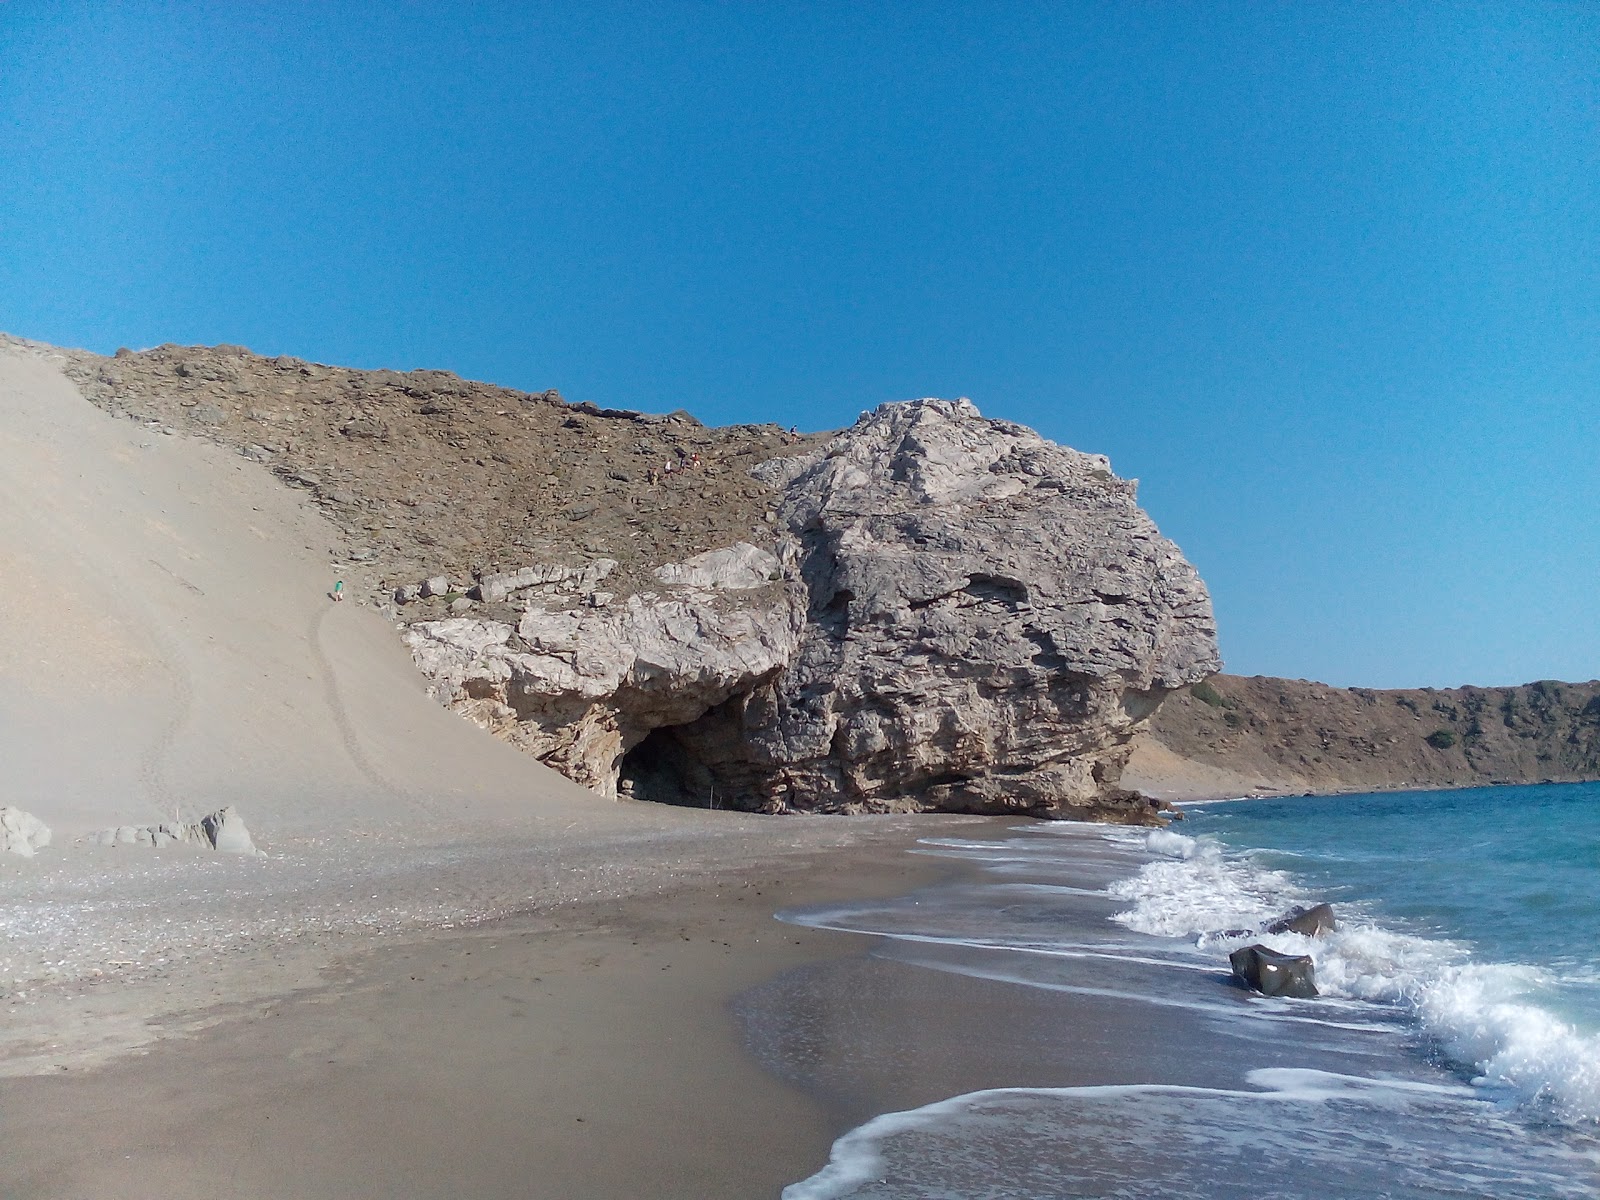 Foto von Agios Pavlos beach II befindet sich in natürlicher umgebung